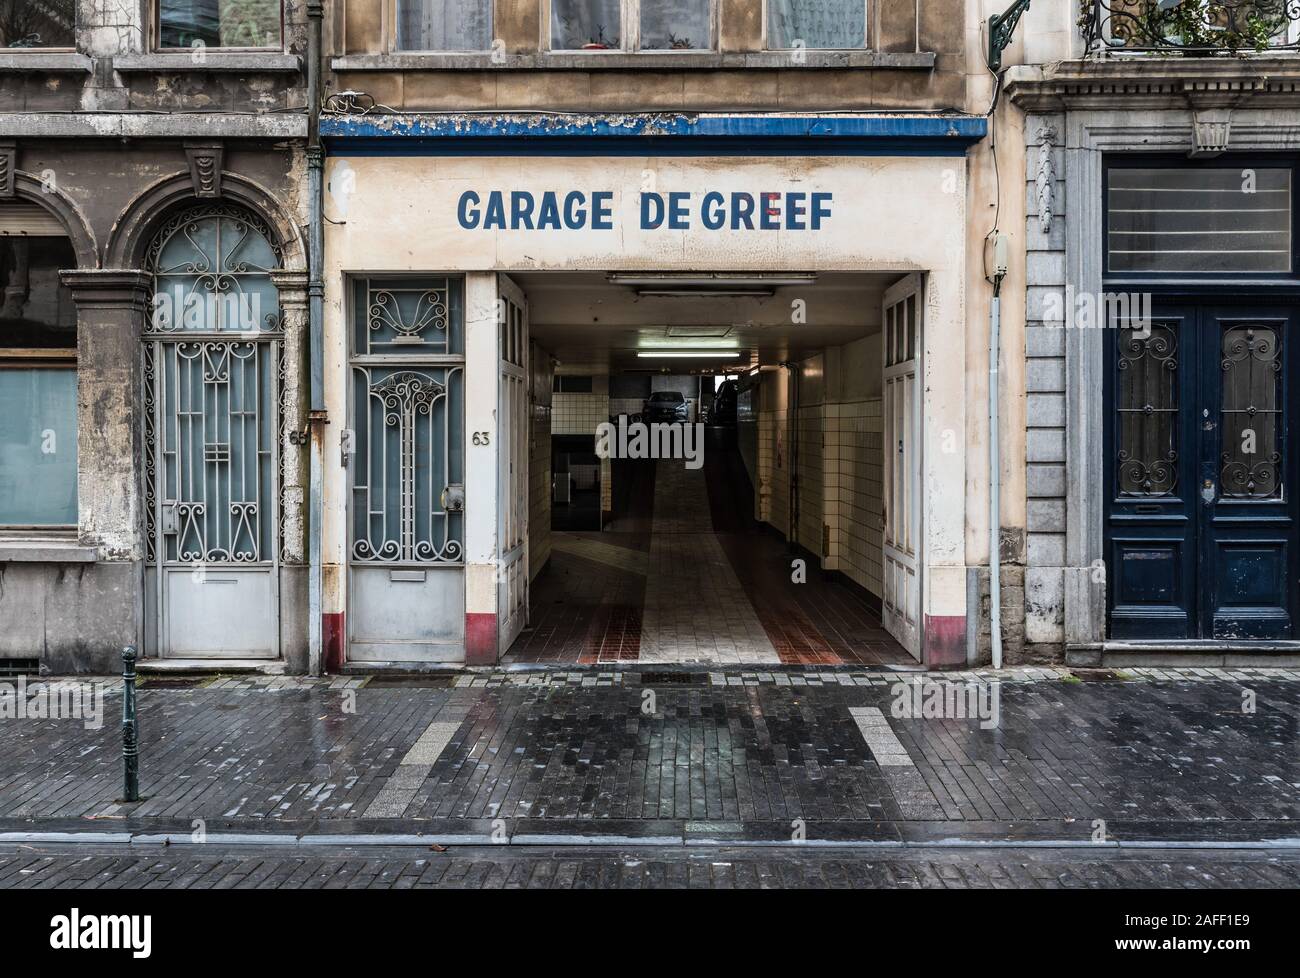 Centro storico di Bruxelles, Regione capitale di Bruxelles / Belgio - 12 12 12 2019: Facciata e ingresso di un garage d'epoca indipendente business chiamato garage De greef Foto Stock